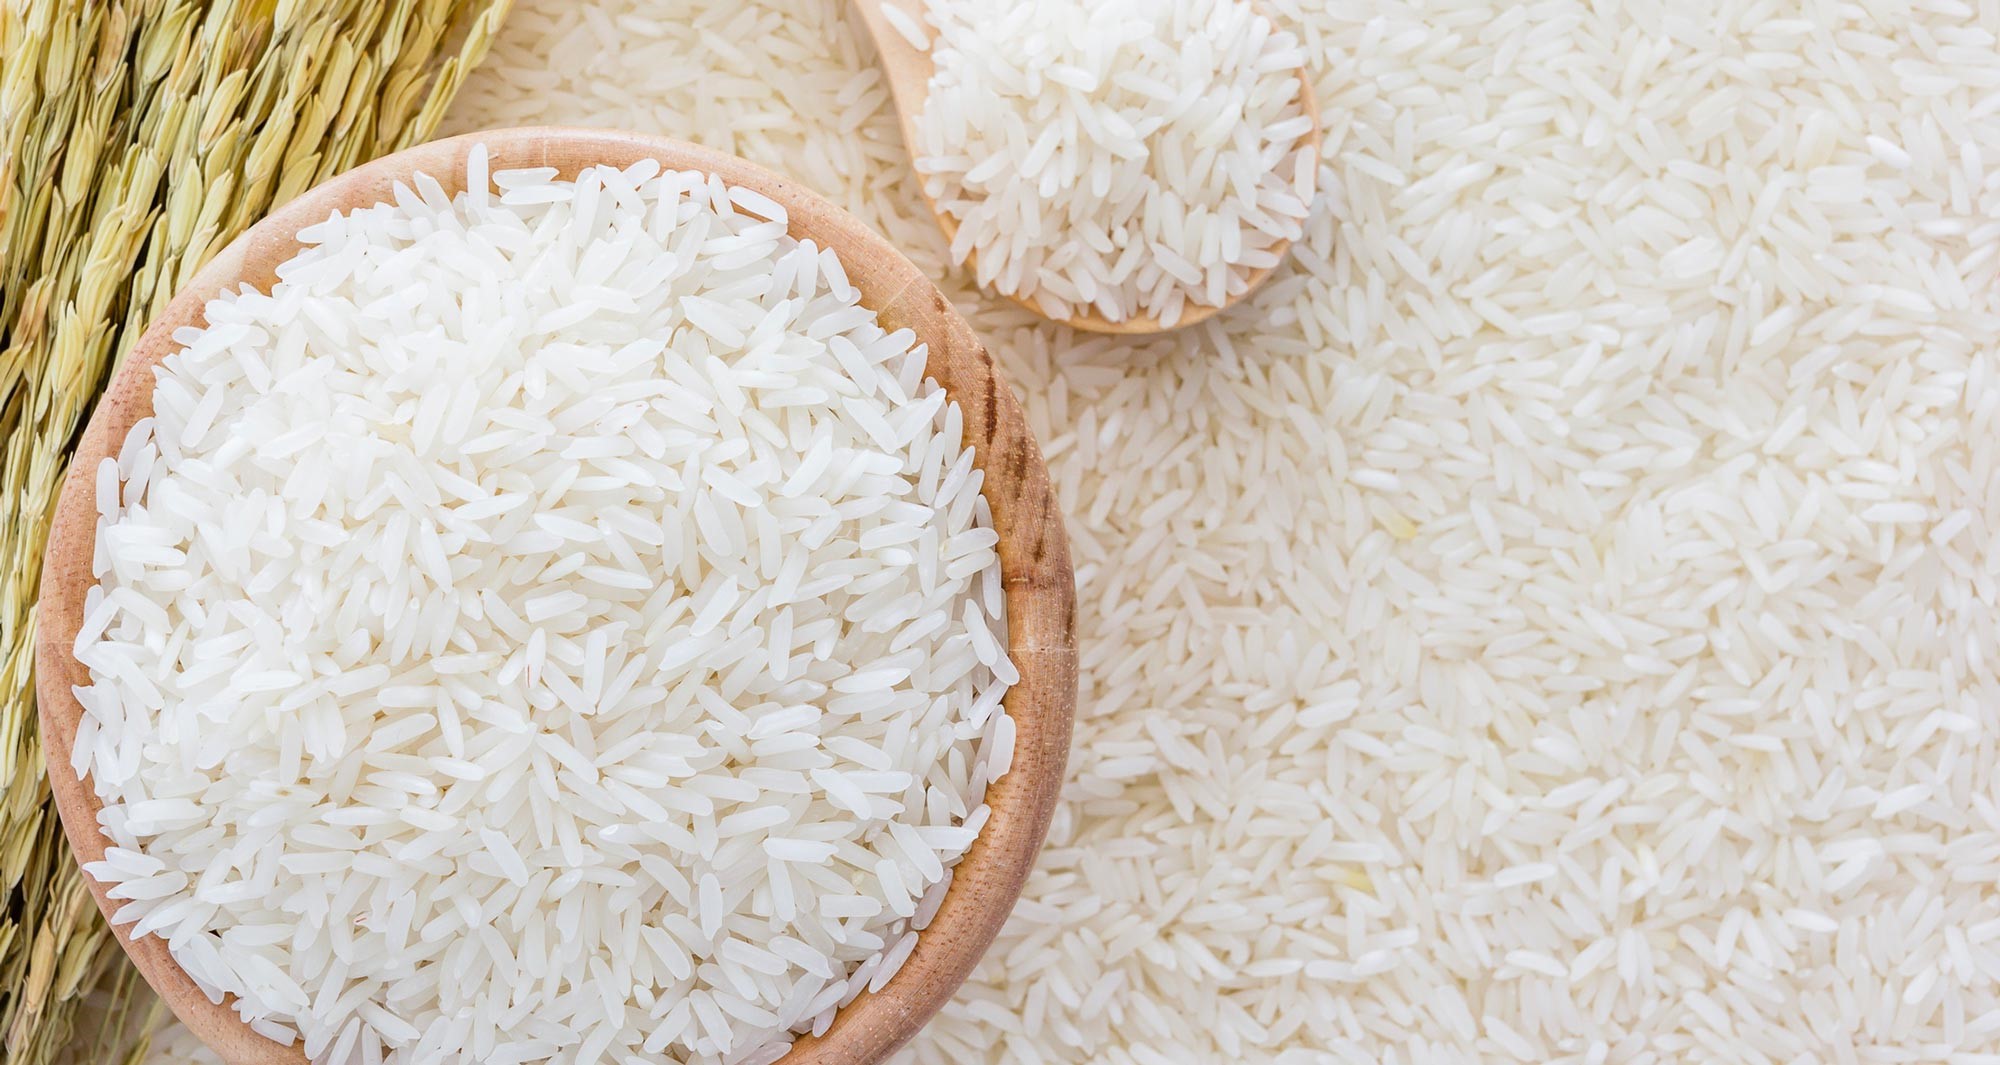 EIU cho rằng sản lượng, tiêu thụ gạo của thế giới sẽ tăng 2 vụ tới 3